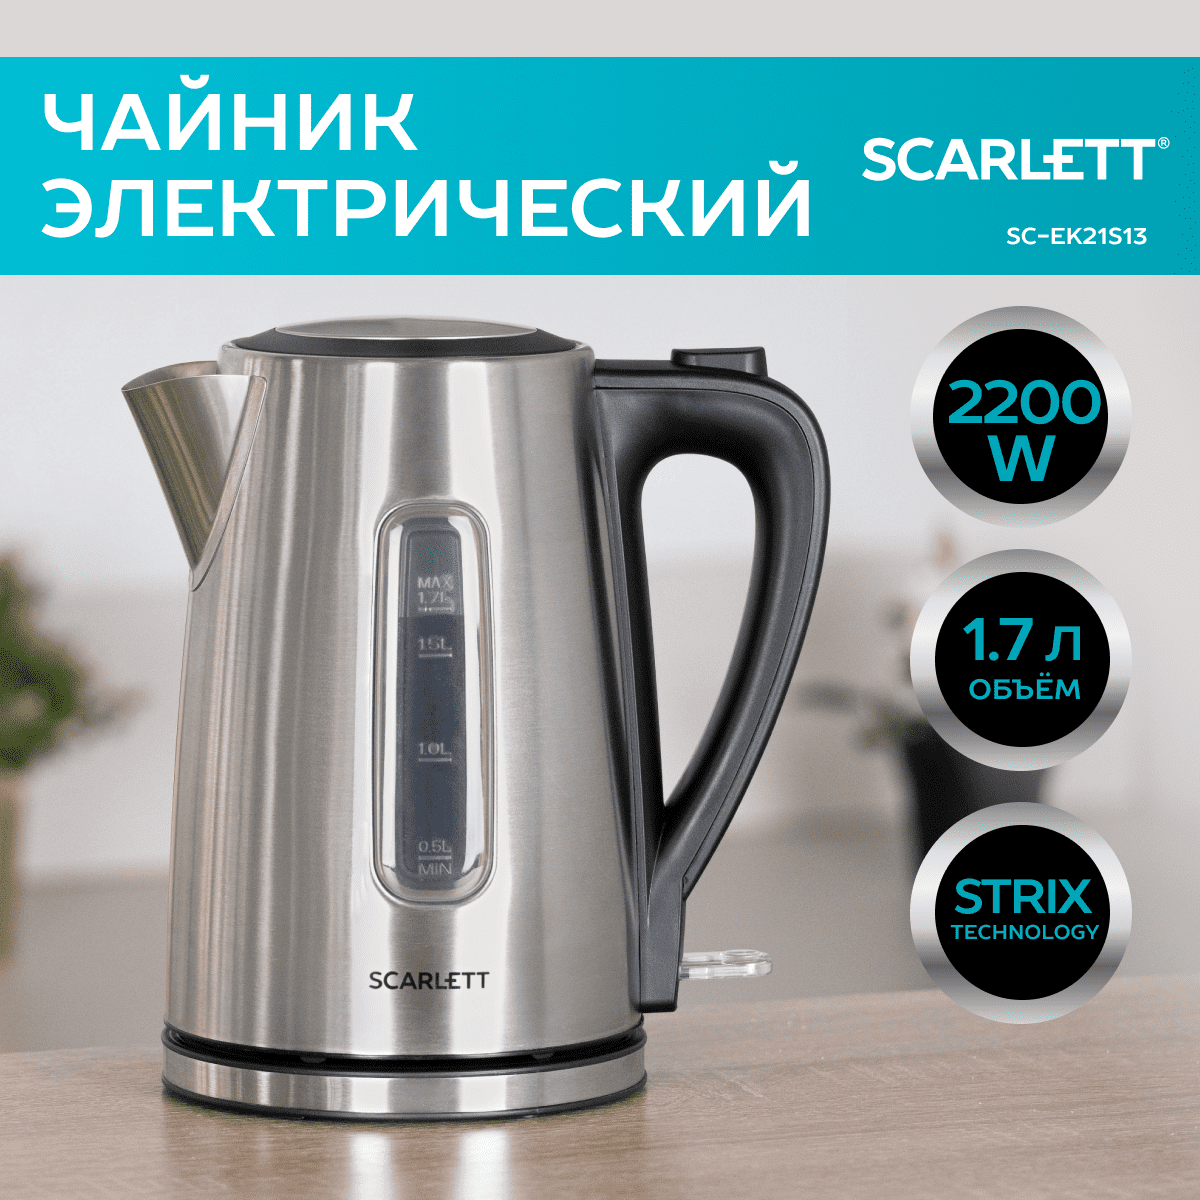 Чайник электрический Scarlett SC-EK21S13 1.7 л серебристый фен scarlett sc hd70it12 2200 вт